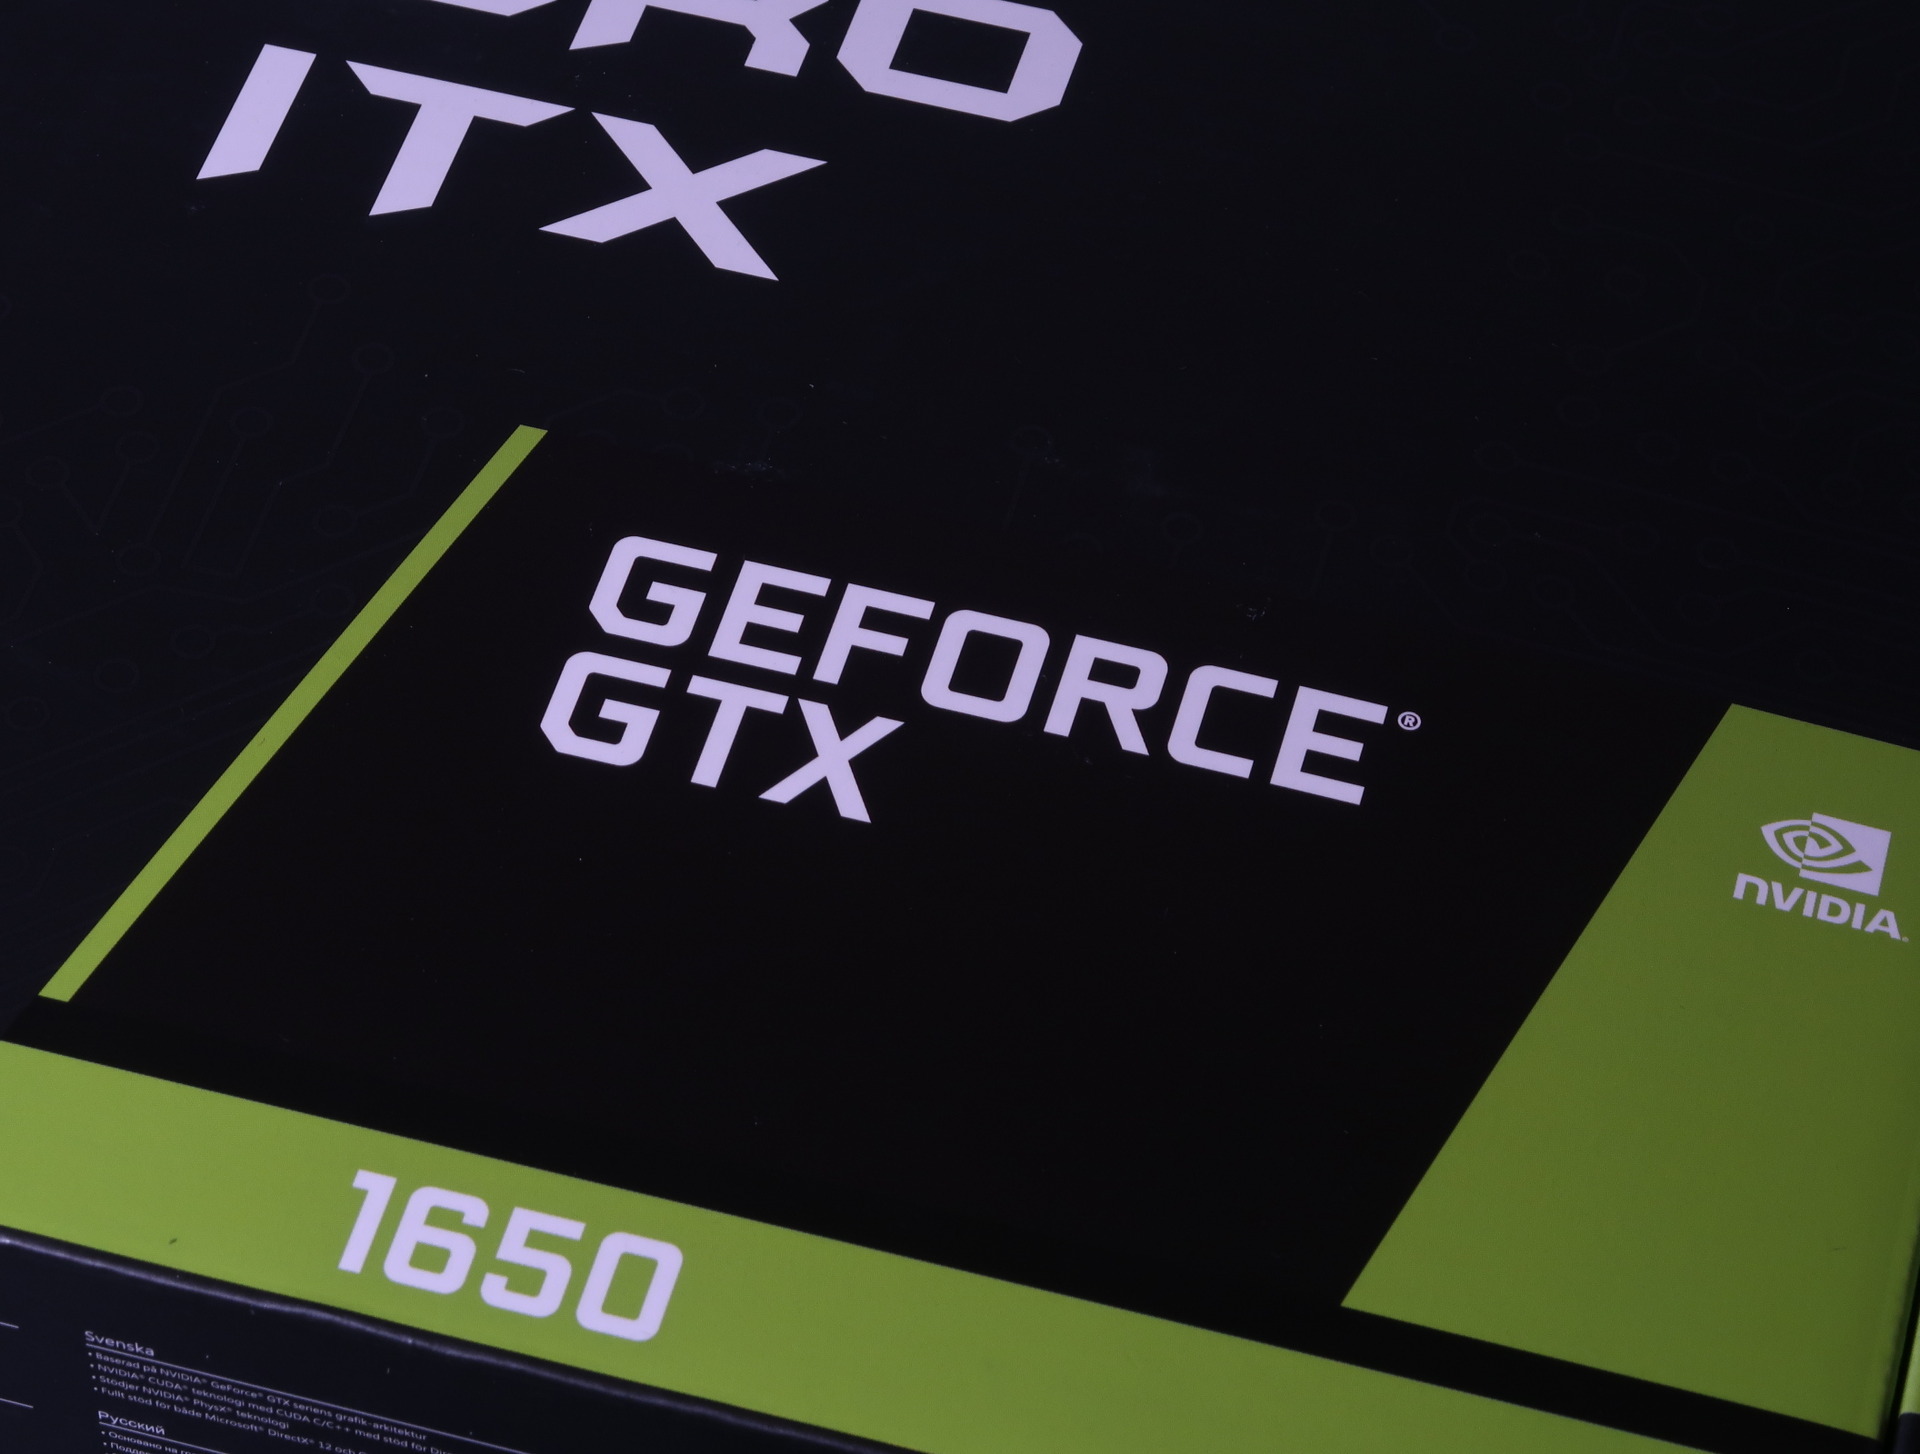 新世代は旧世代を大きく超えよ: 【補助電源不要】MSI社「GeForce GTX